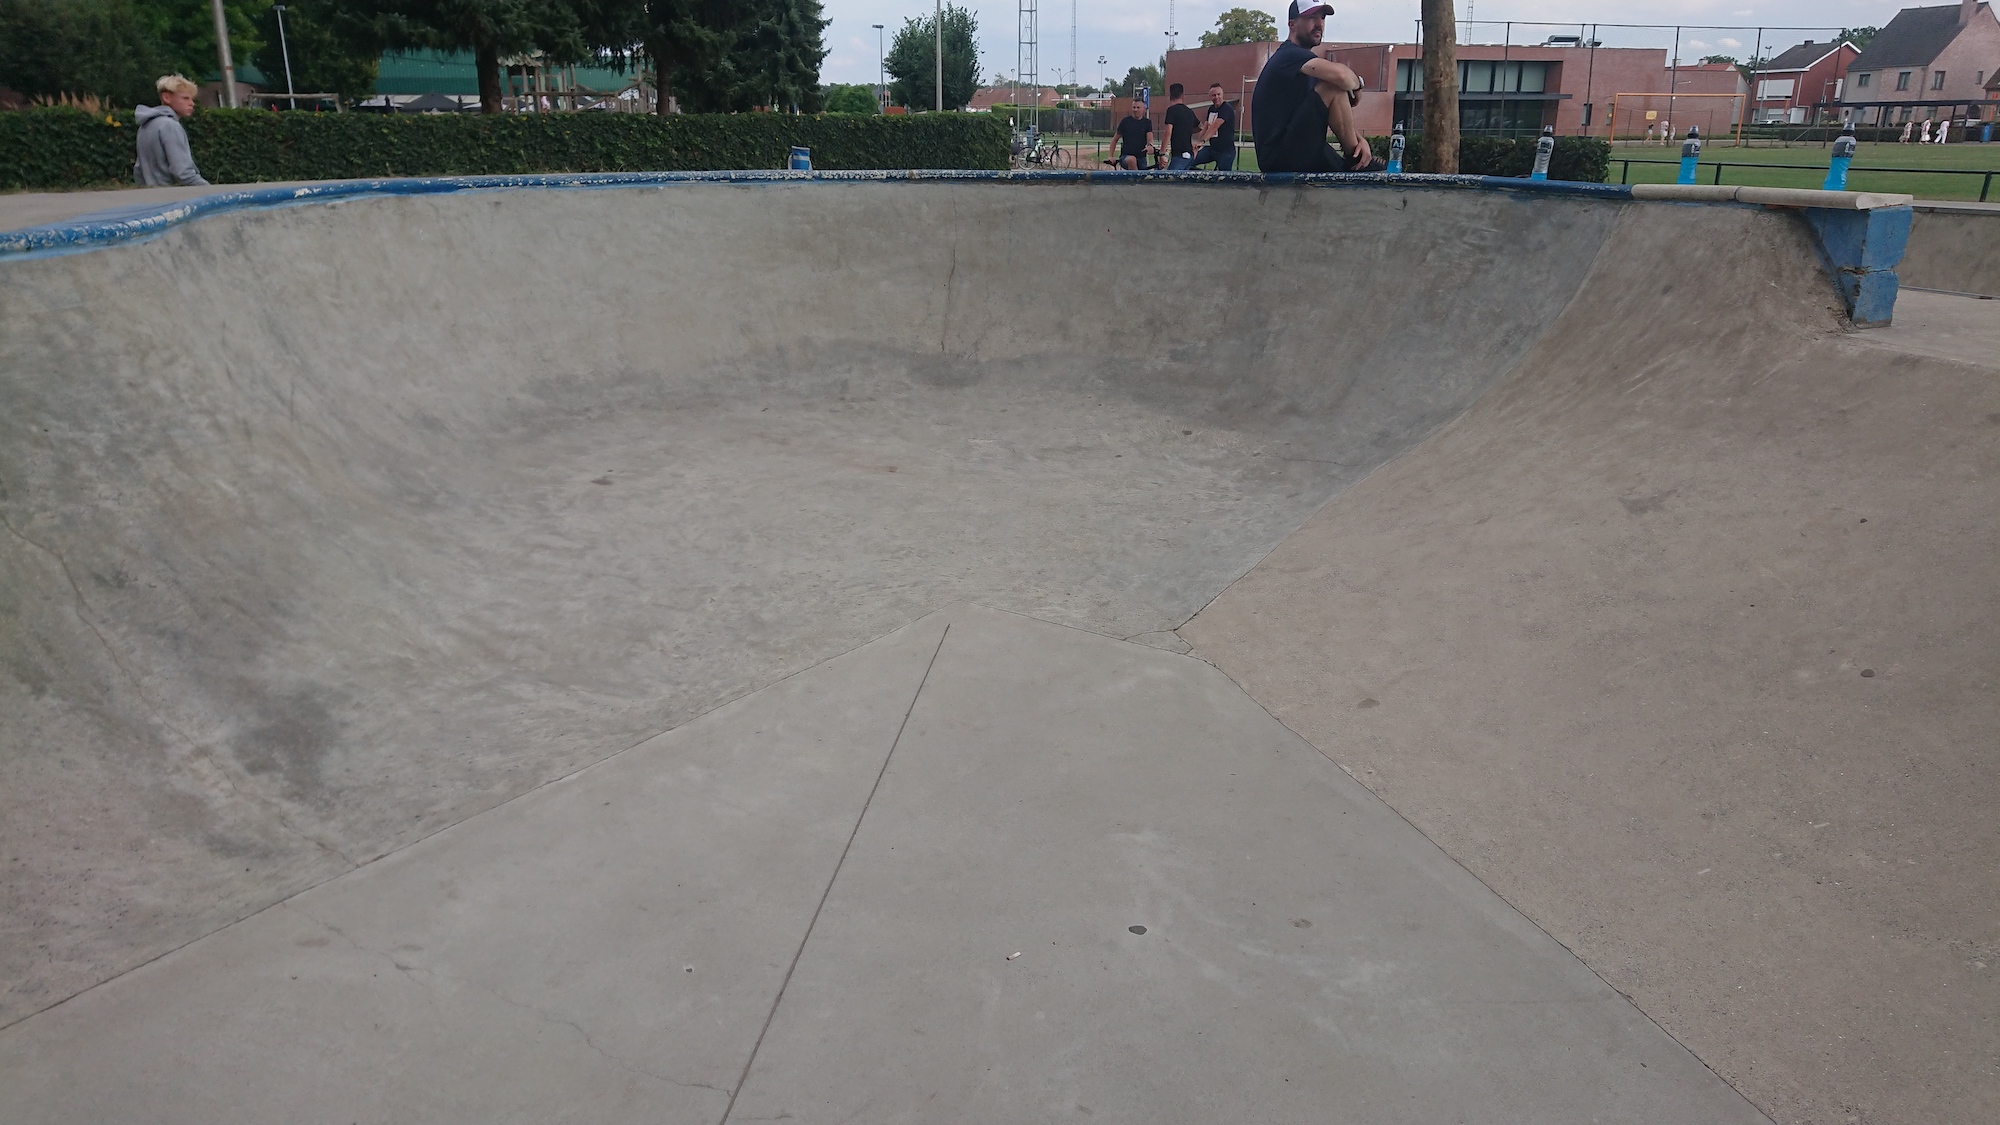 Vorselaar skatepark